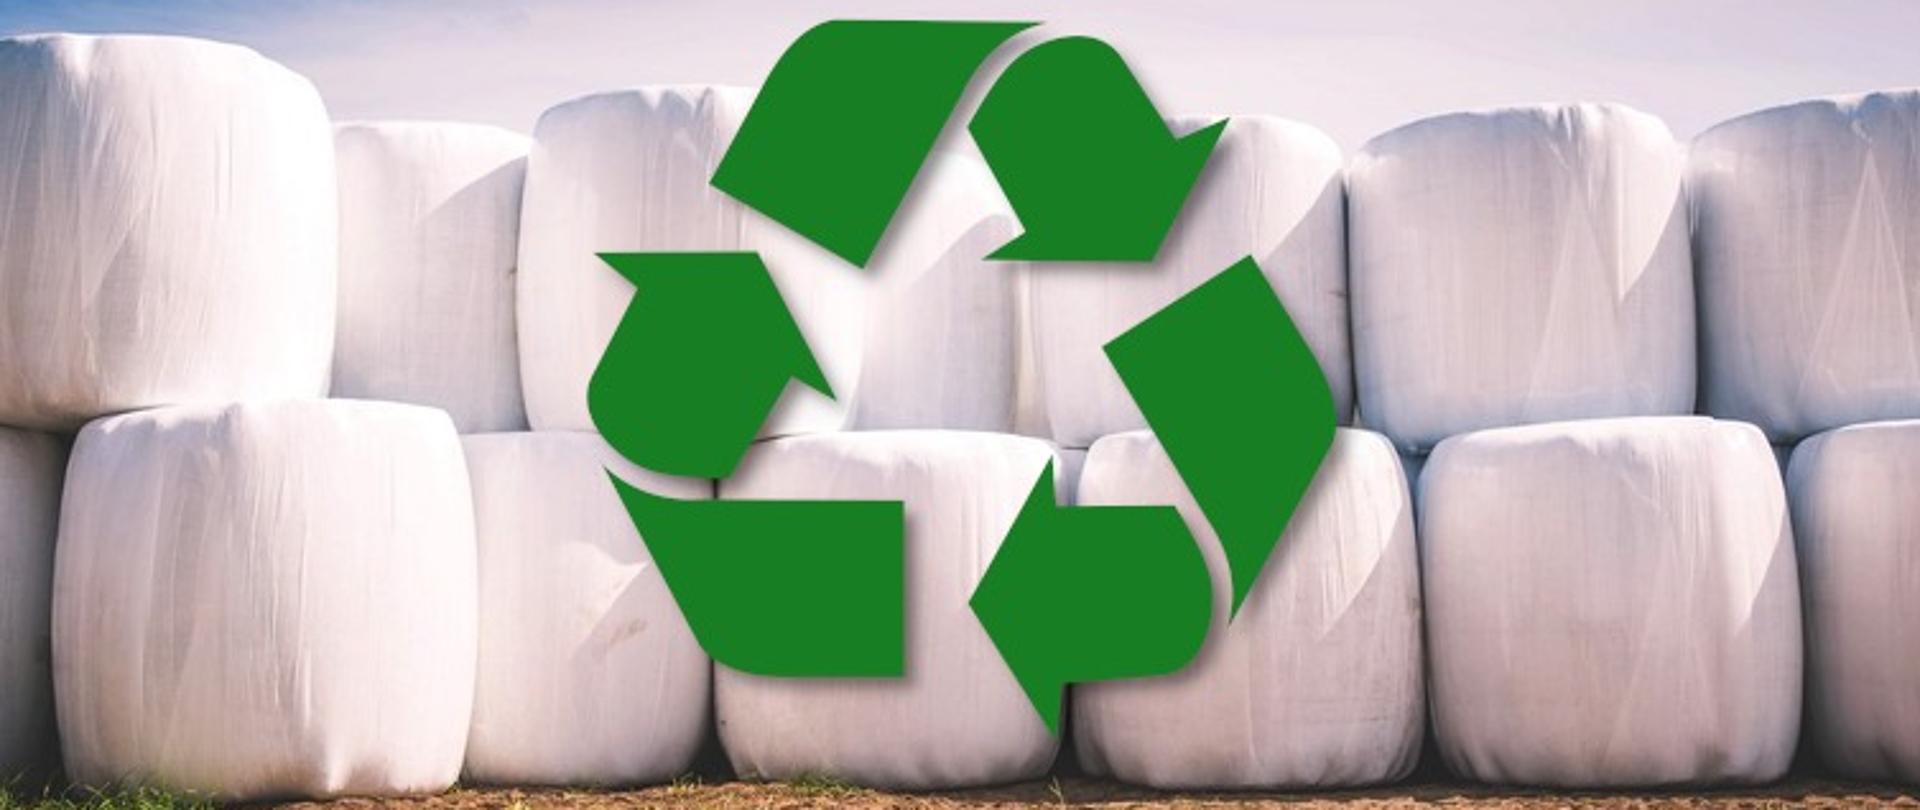 Usuwanie folii rolniczych i innych odpadów pochodzących z działalności rolniczej